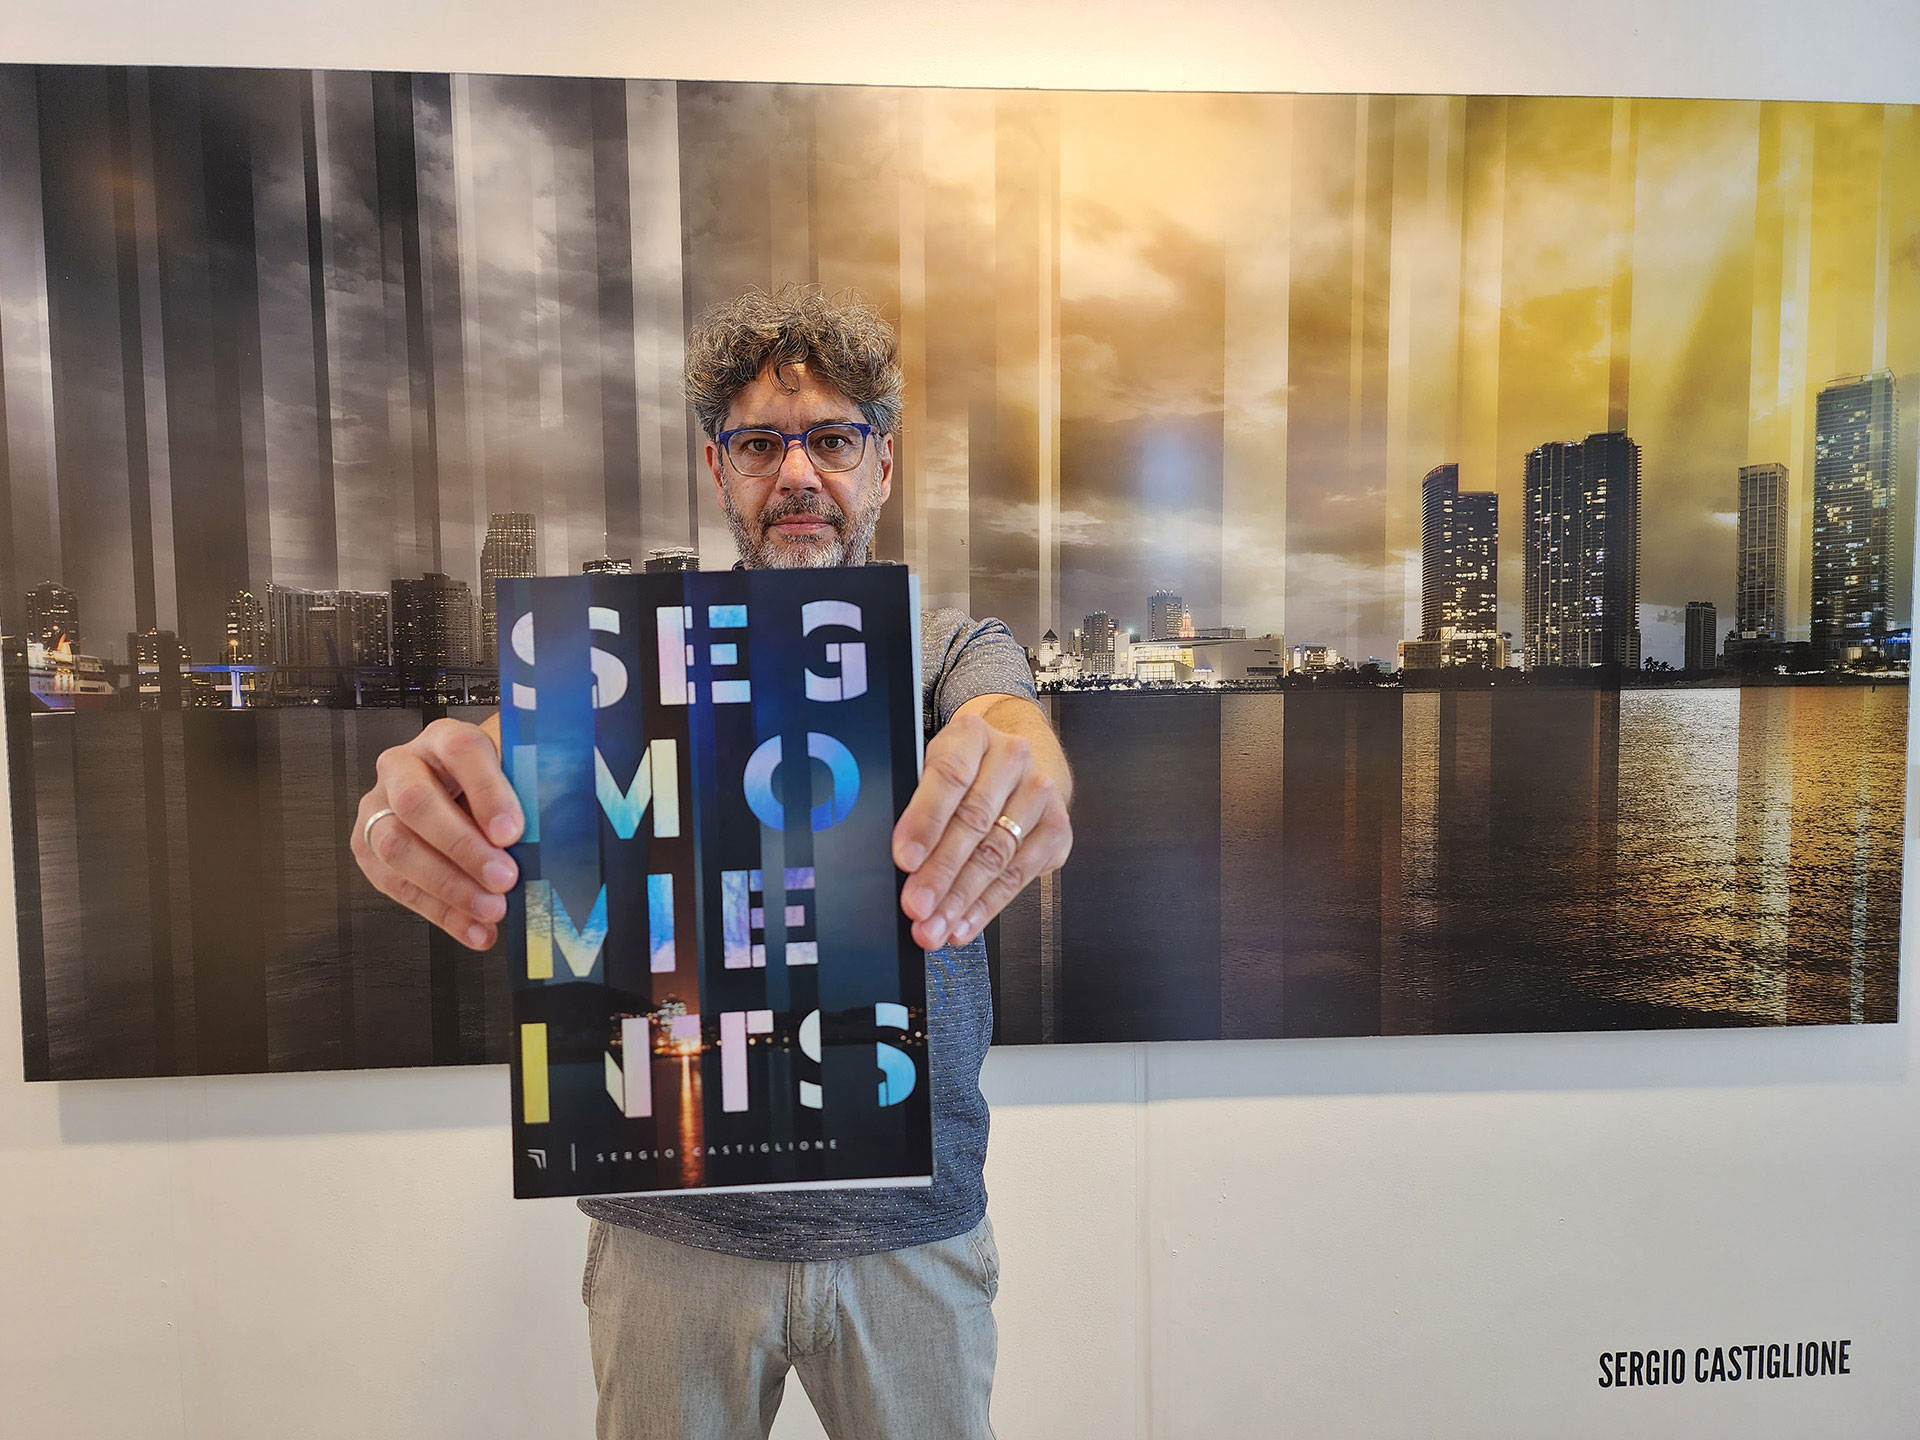 El fotógrafo y arquitecto Sergio Castiglione expone por primera vez en Pinta, con su serie "Segmoments". (@nachomartinfilms)